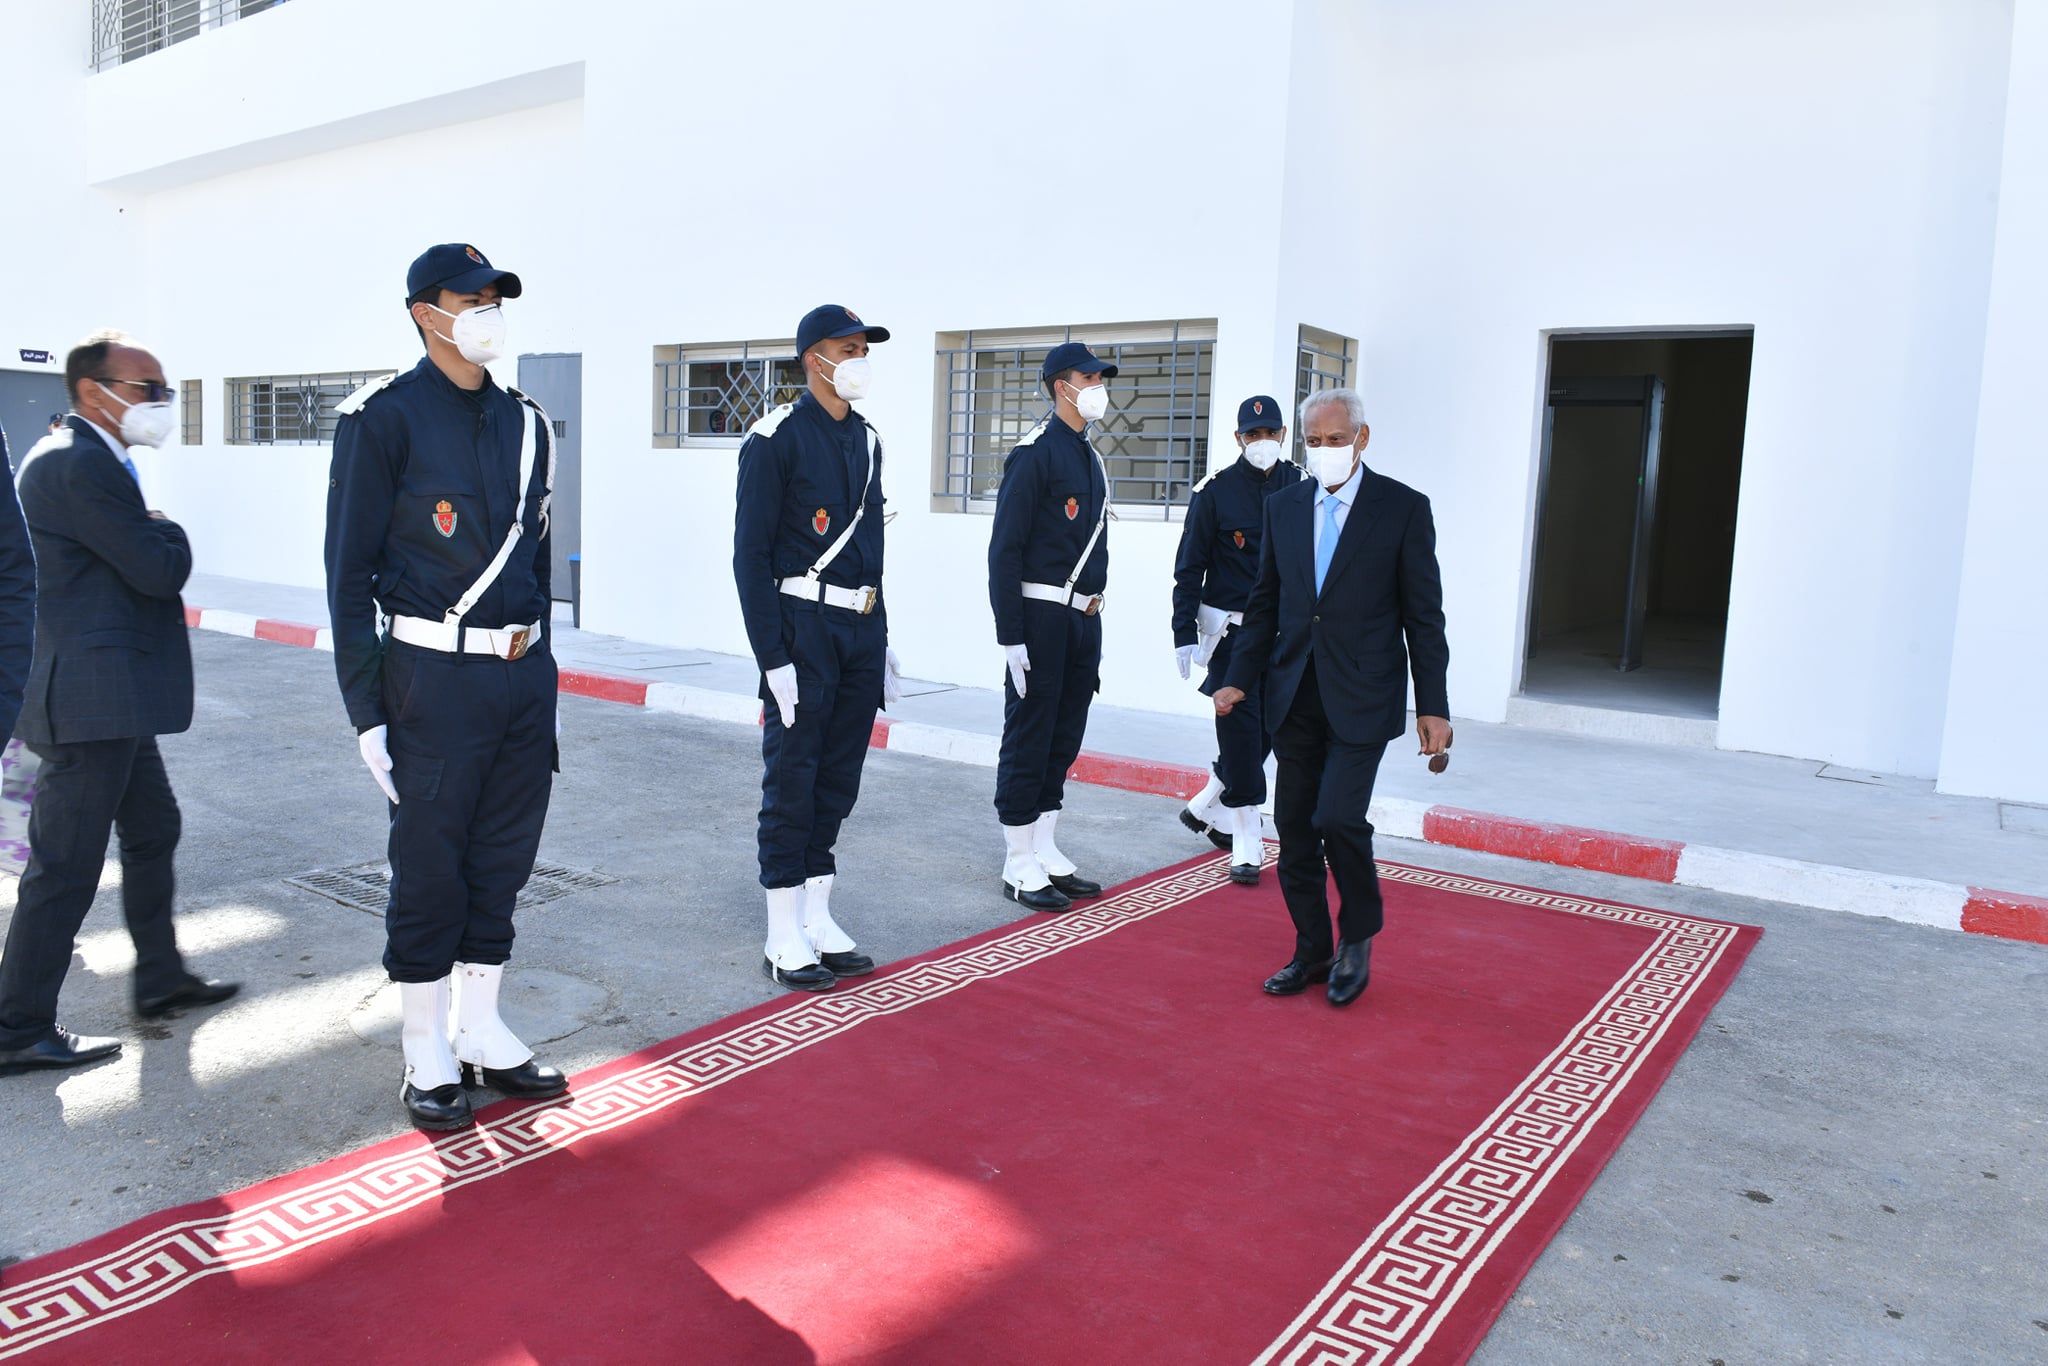 مندوبية التامك تضع مخططاً استراتيجياً لمواكبة التغيرات السياسية والإجتماعية التي يعرفها المغرب